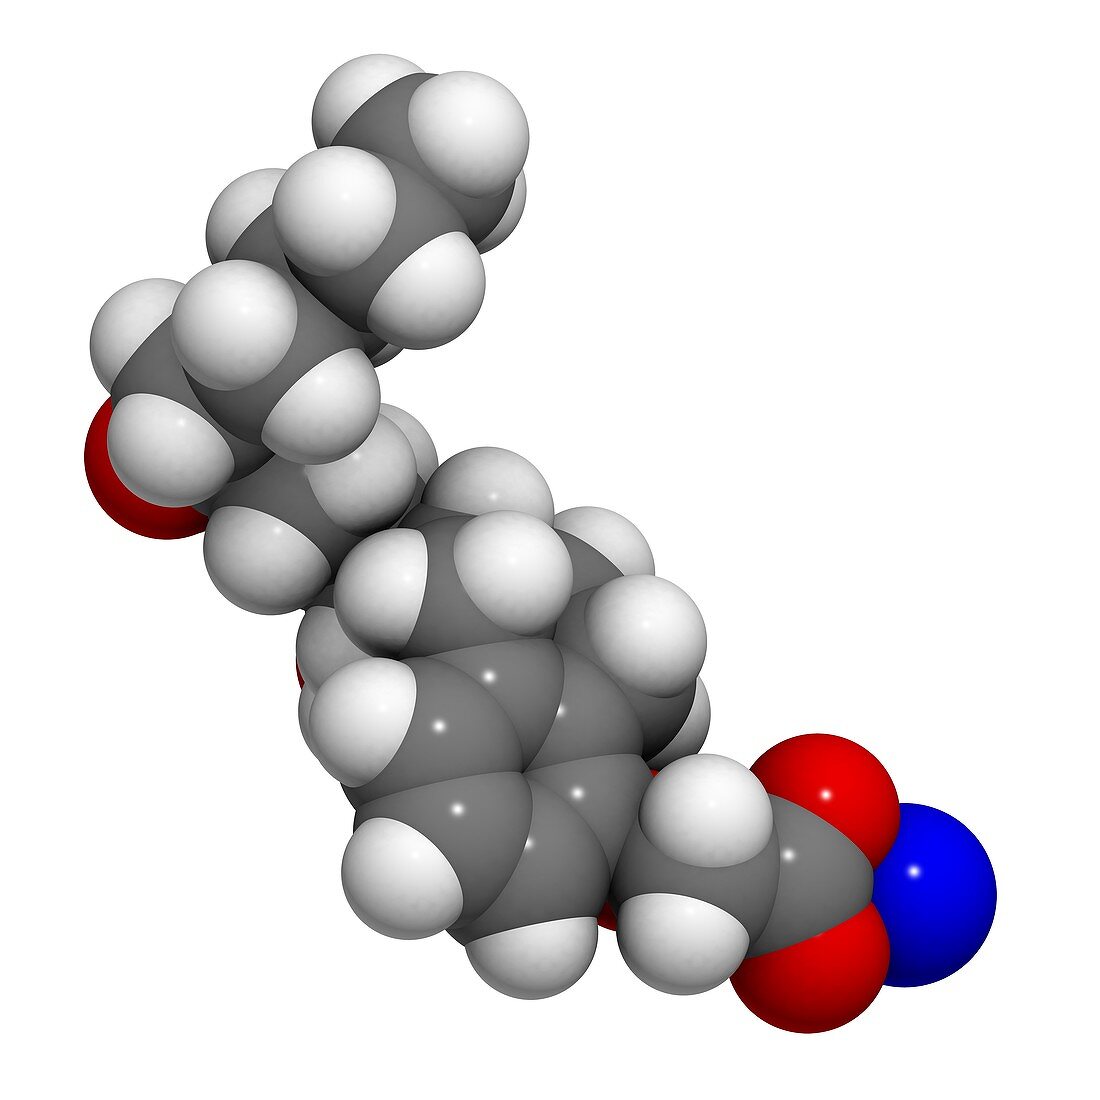 Treprostinil drug,molecular model